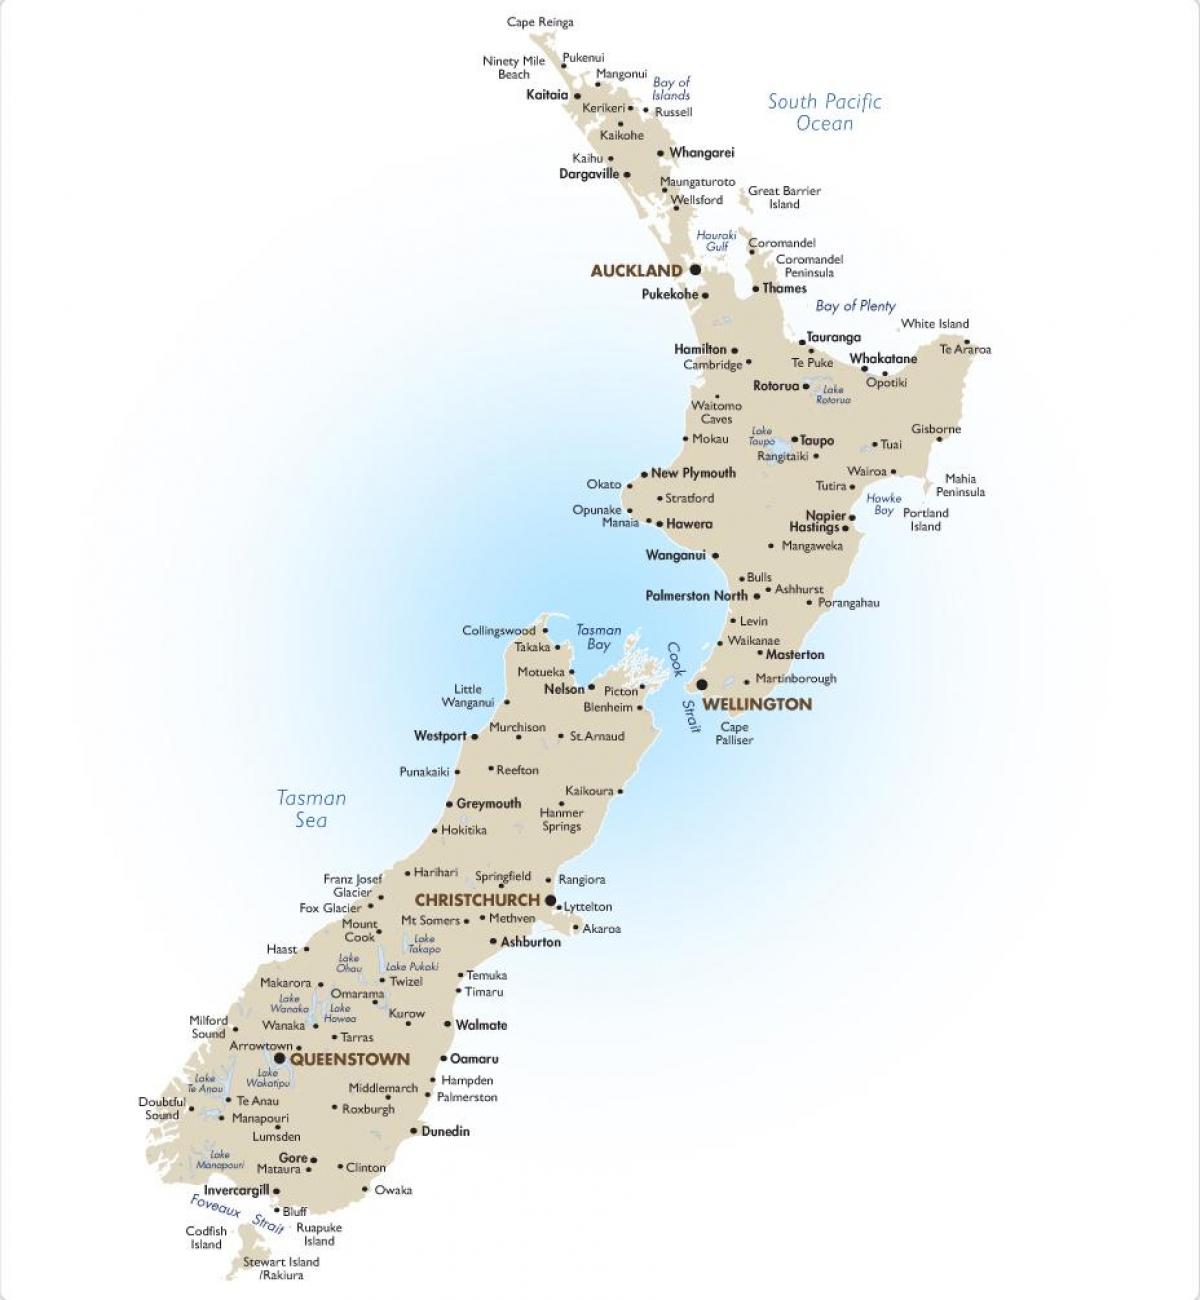 քարտեզ է Նոր Զելանդիայի խոշոր քաղաքների